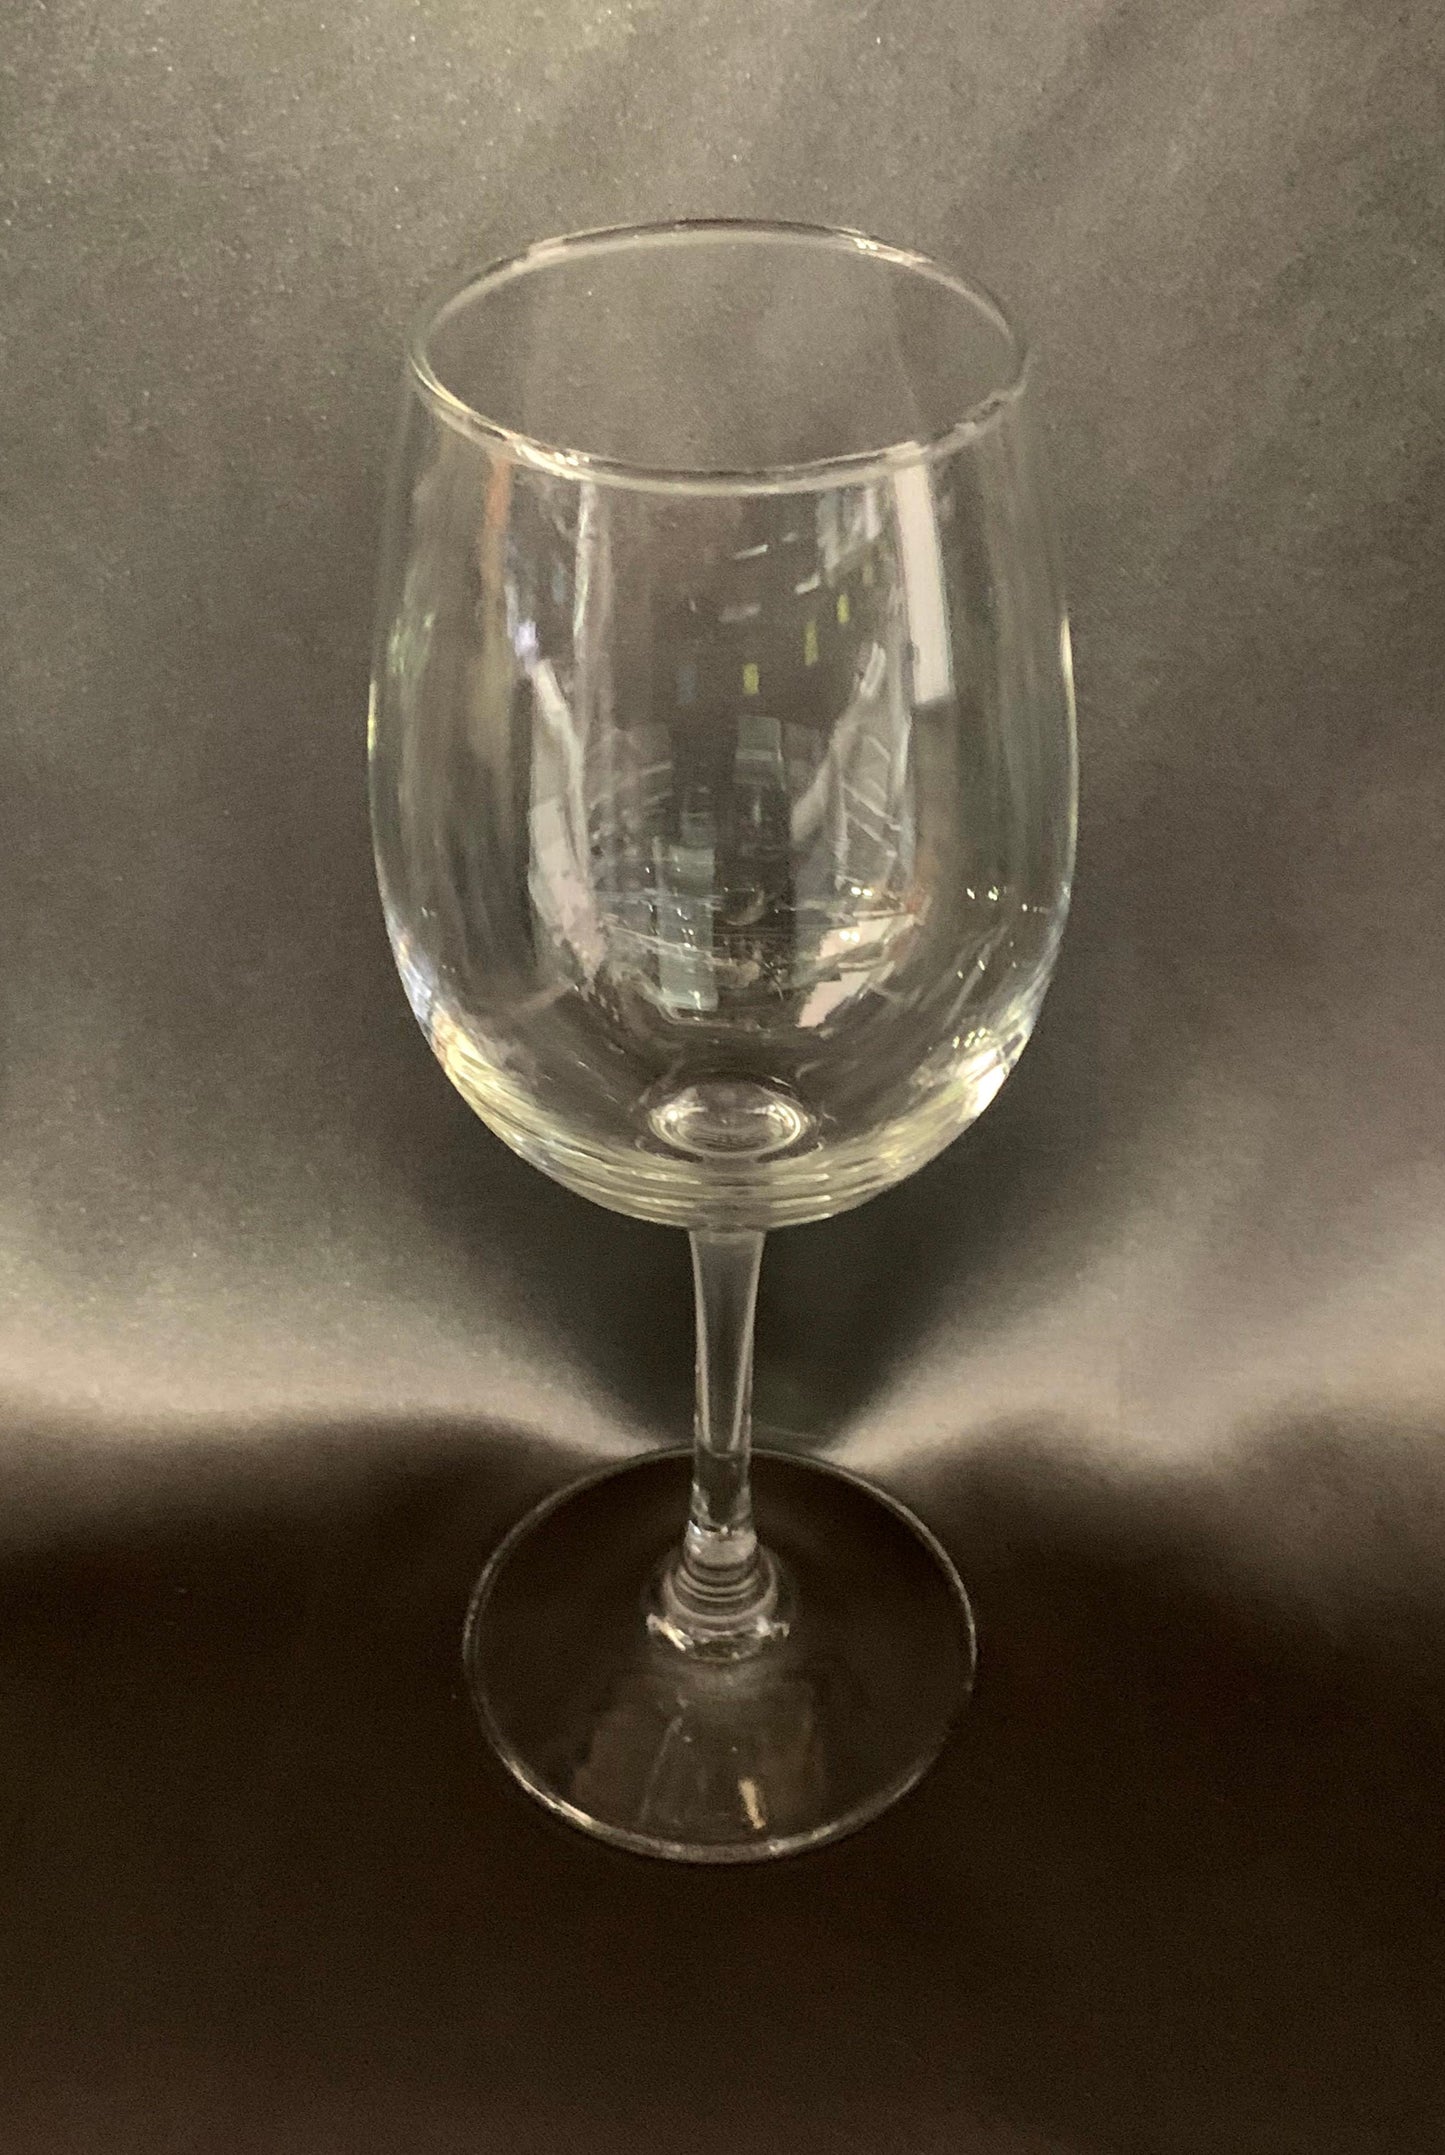 TN Wine Glass 11.75oz